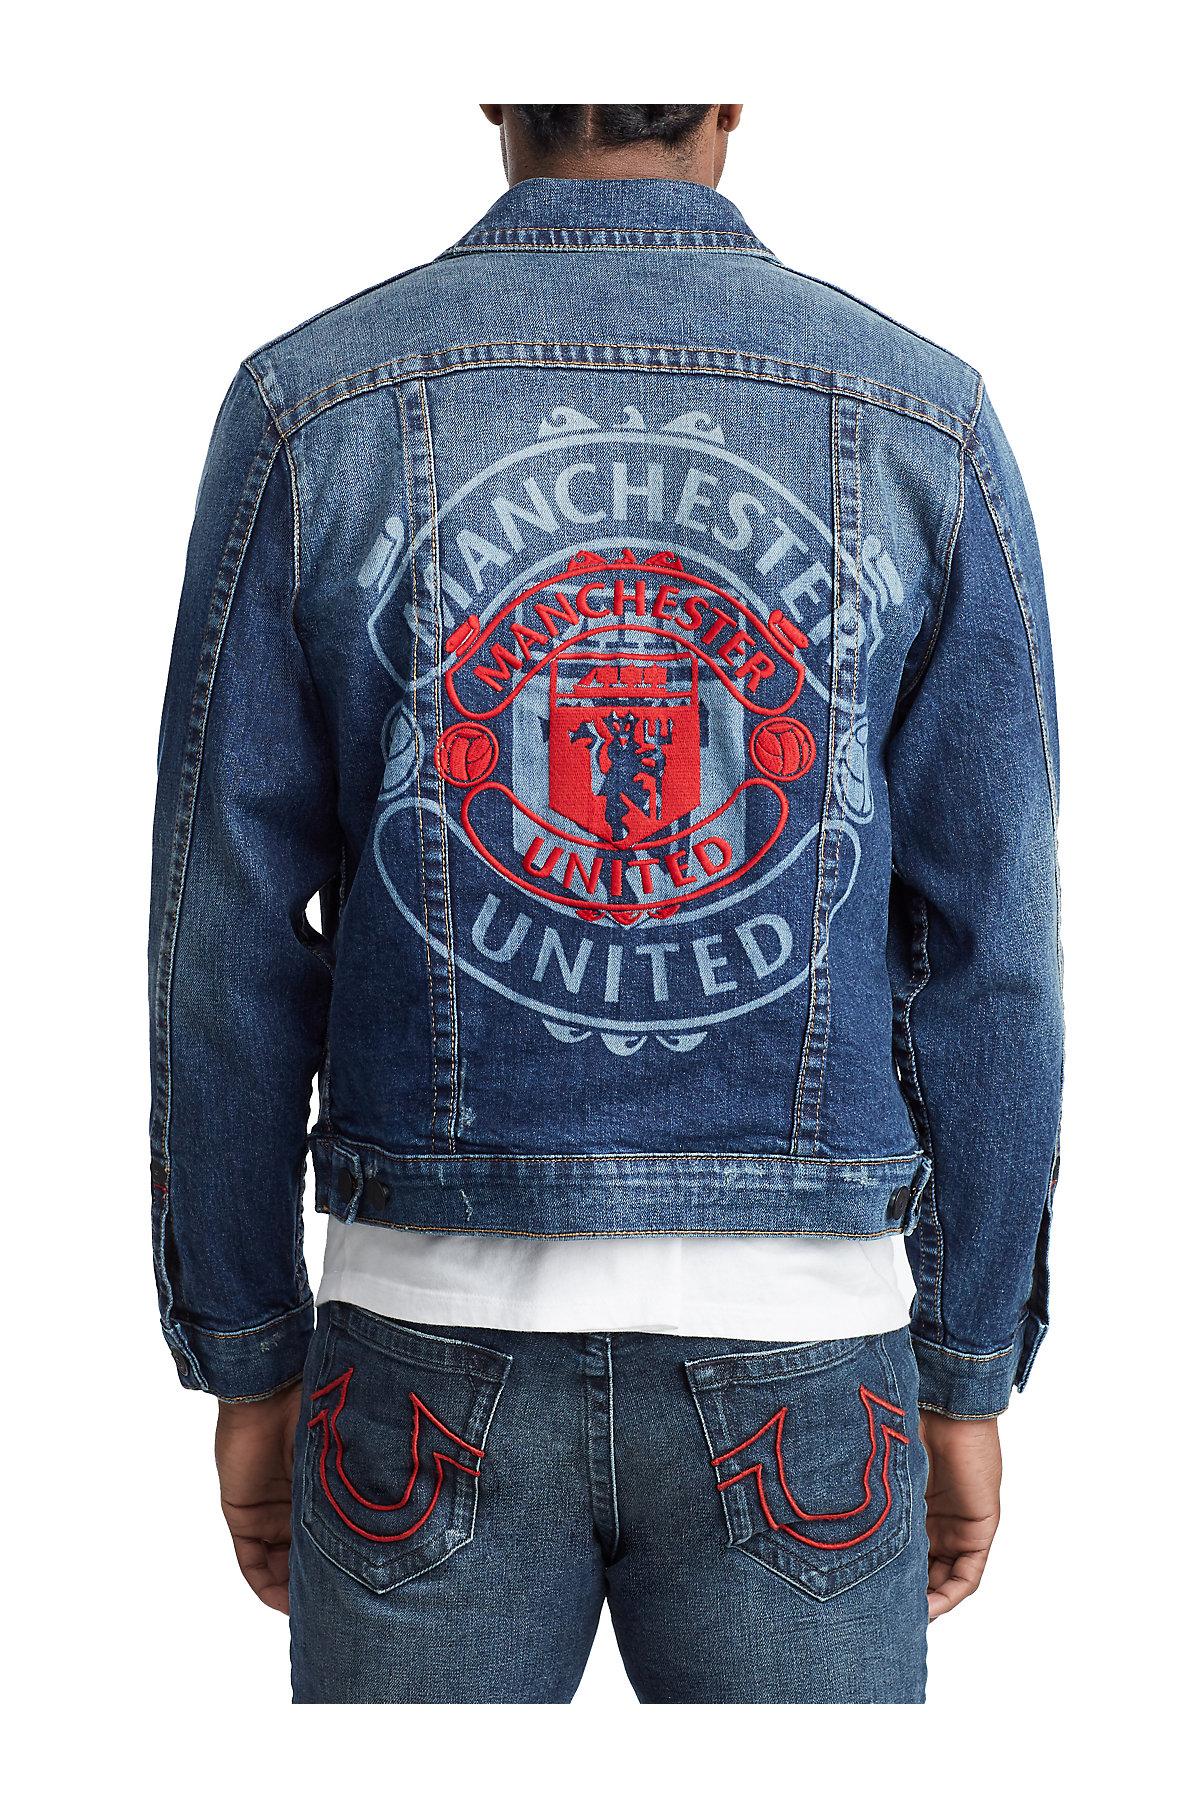 True Religion Tr X Manchester United Embroidered Denim Jacket in Indigo